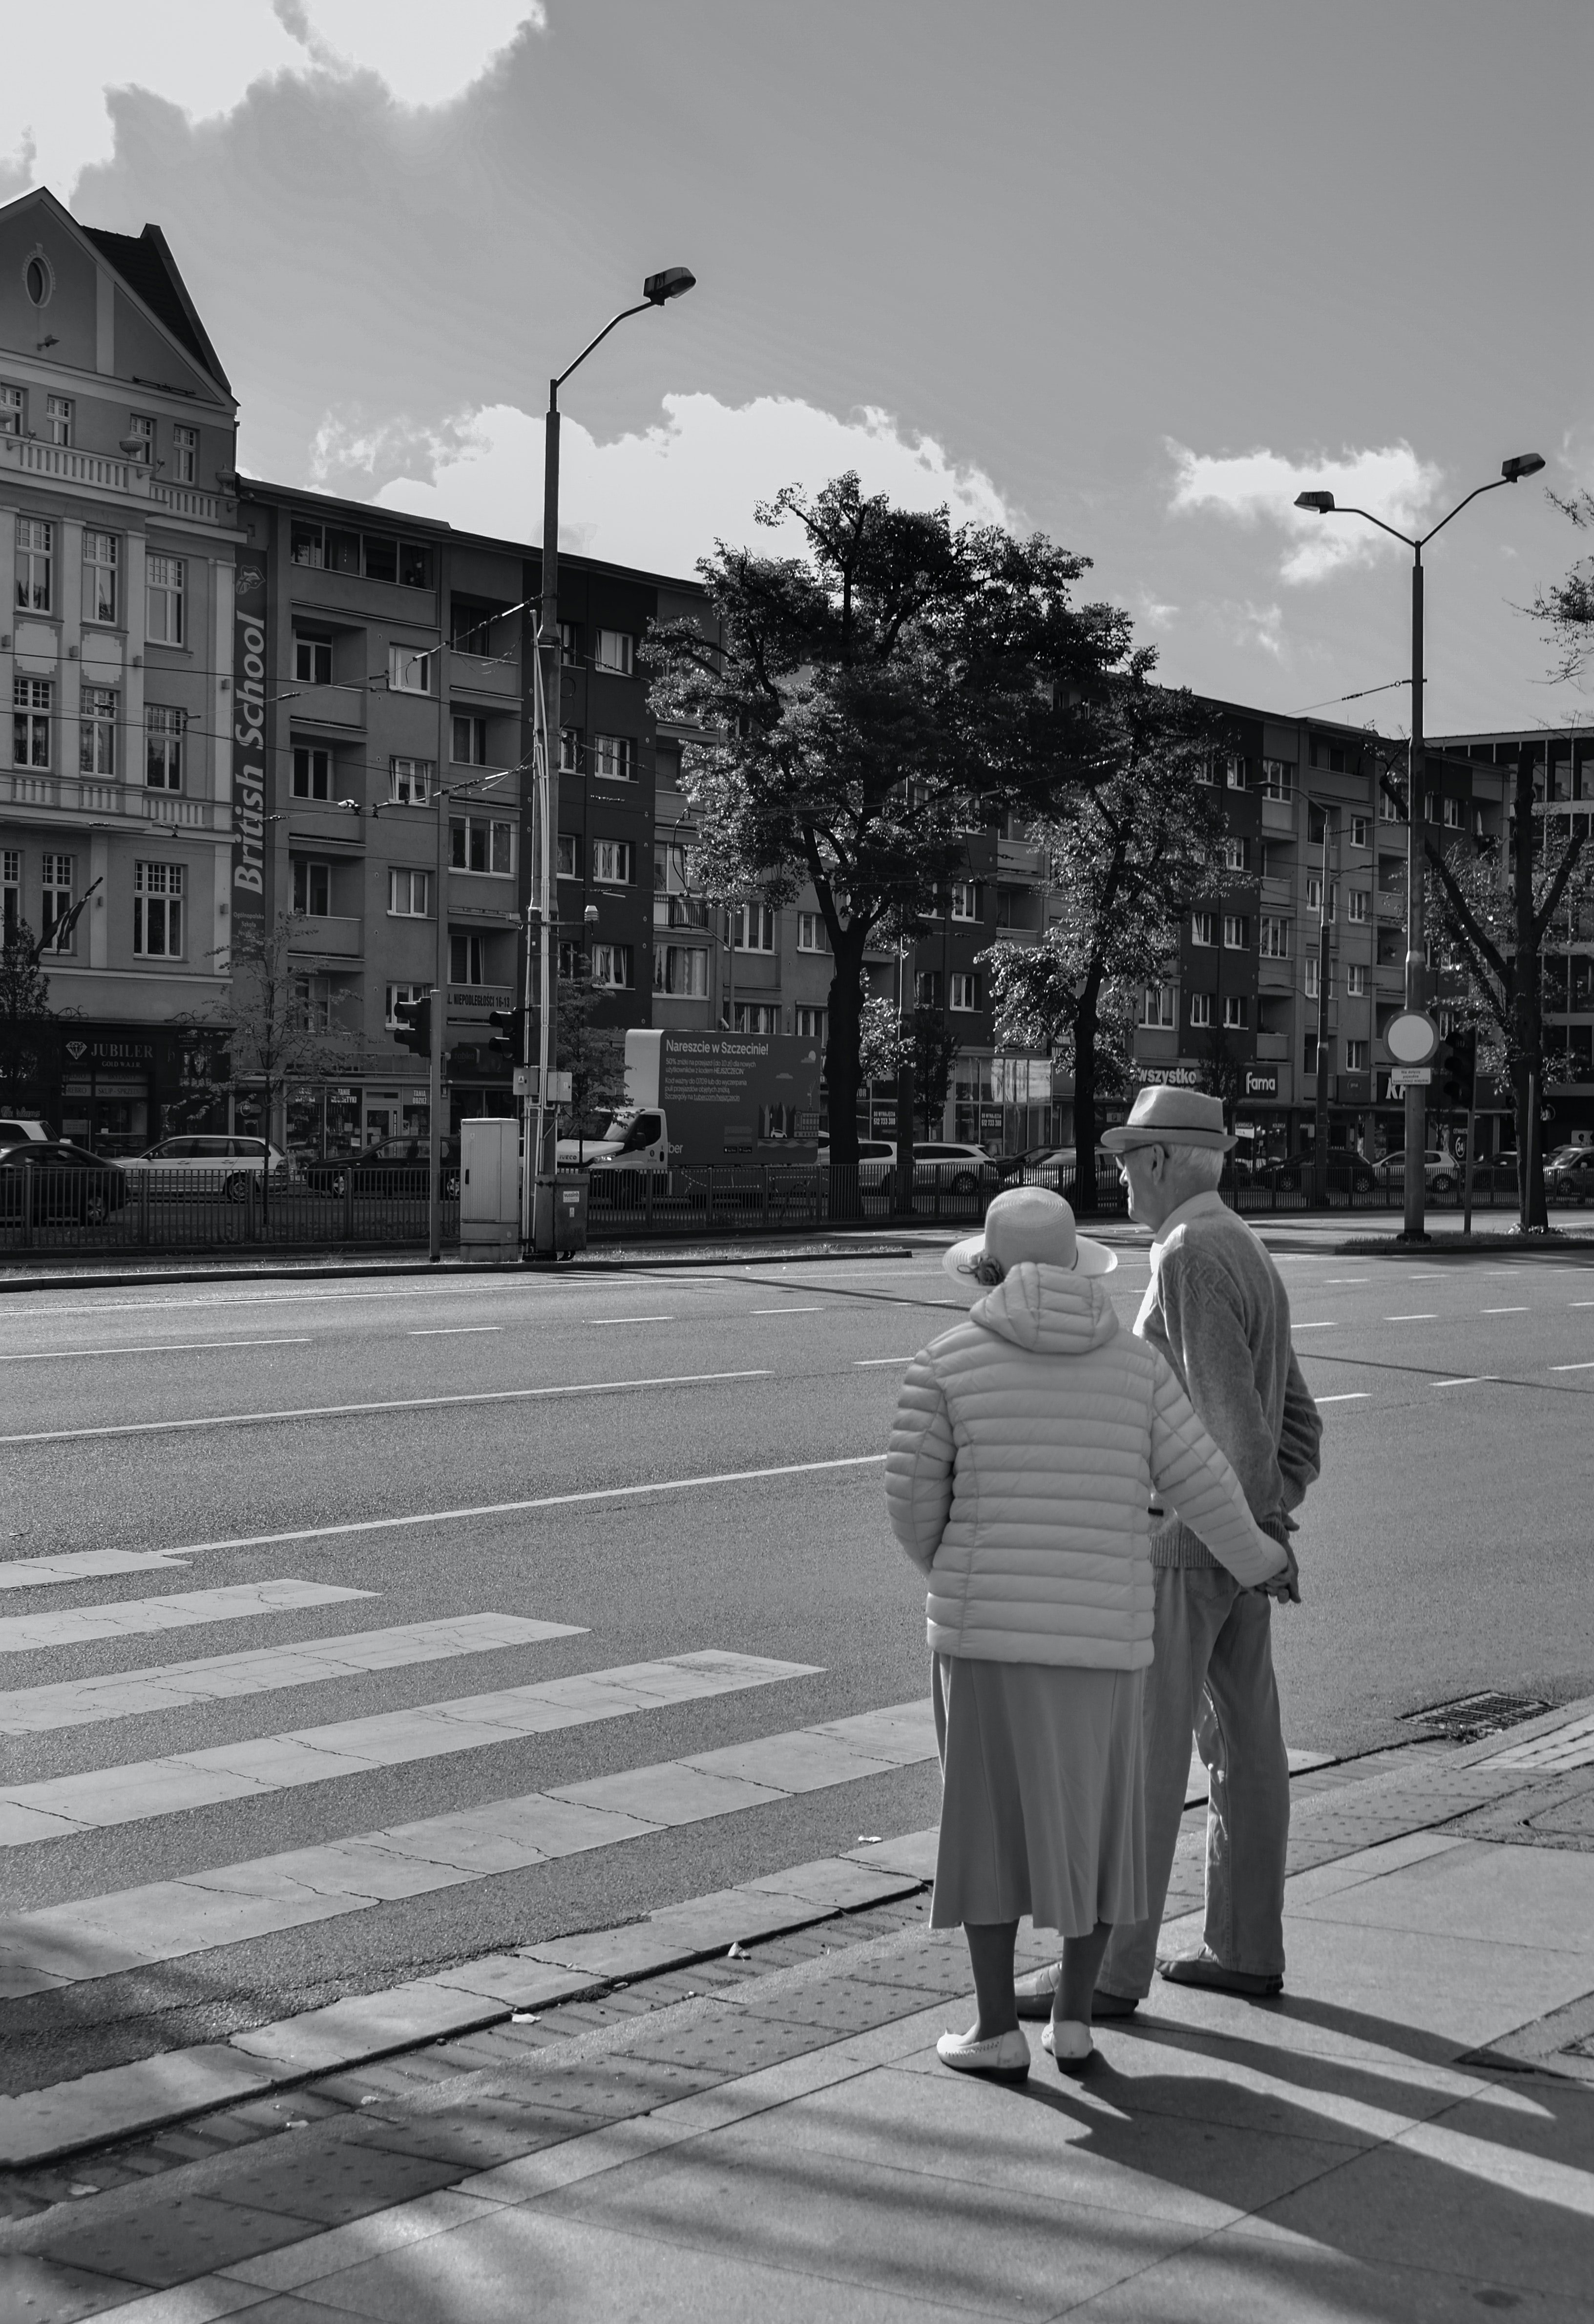 Martha half Herrn Plötzer über die Straße. | Quelle: Pexels